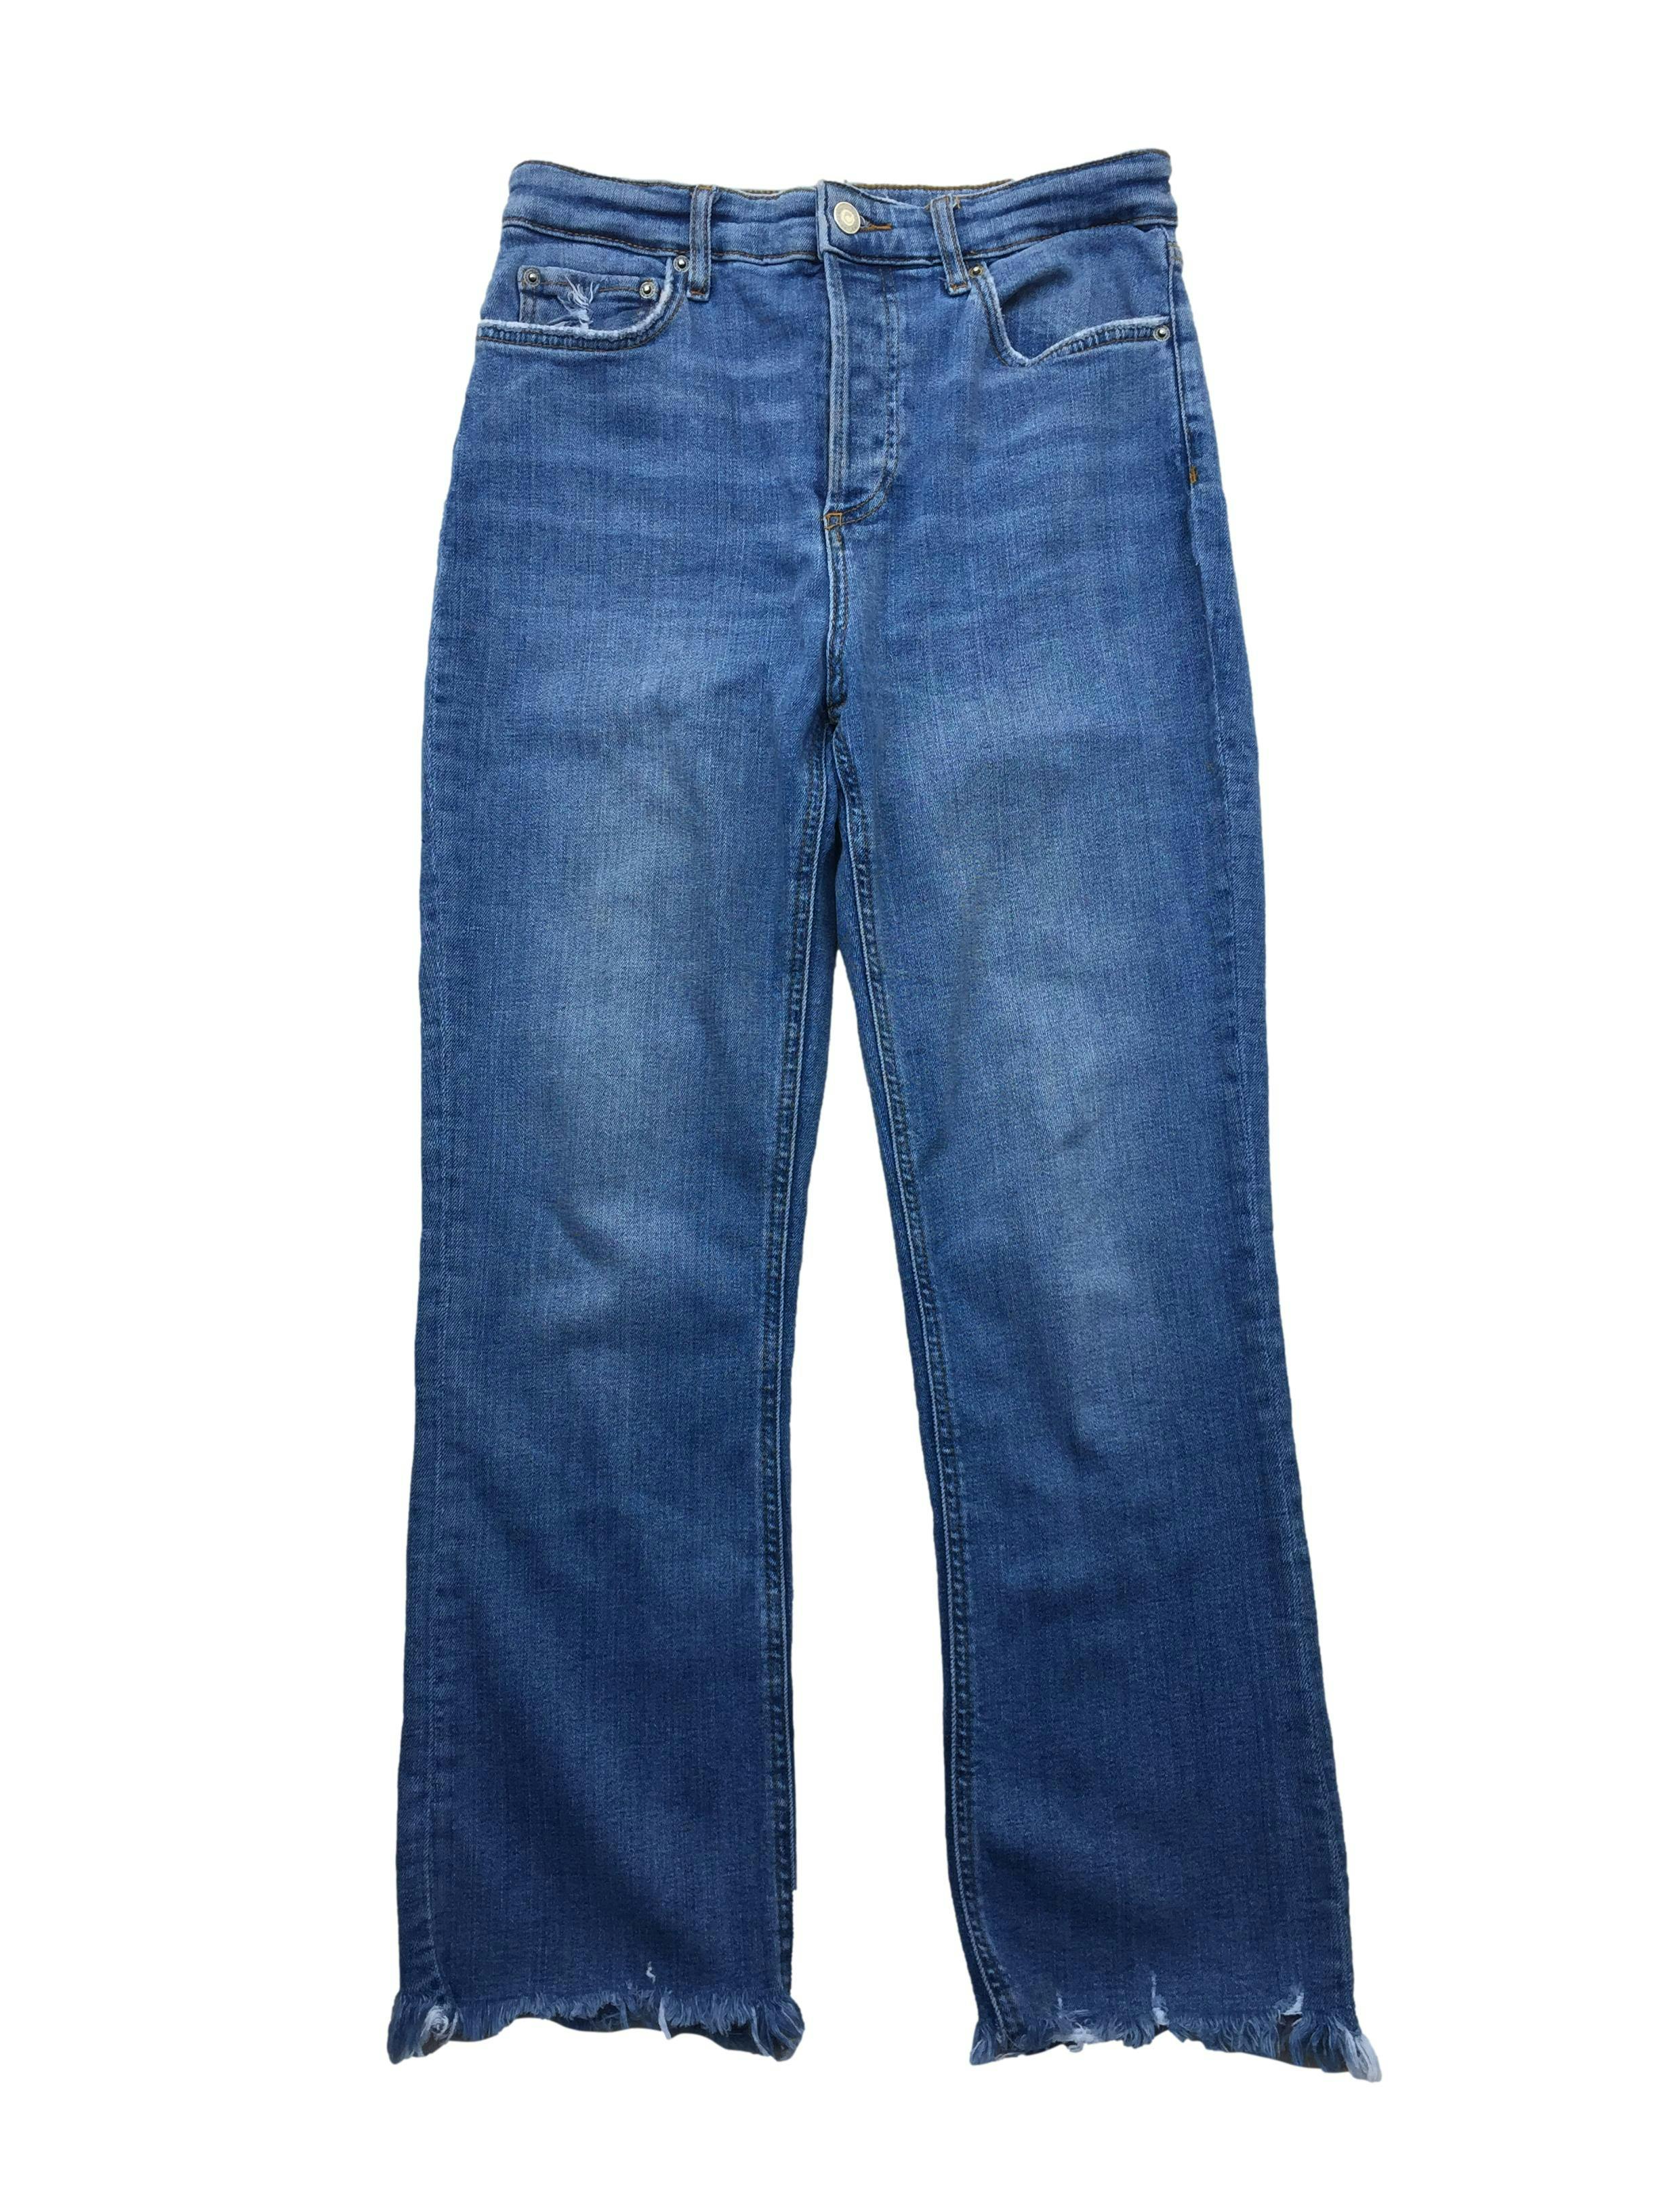 Jeans Zara de corte recto y tiro alto con cuatro botones escondidos, five-pockets y basta desflecada. Cintura 76cm, Largo 95cm.